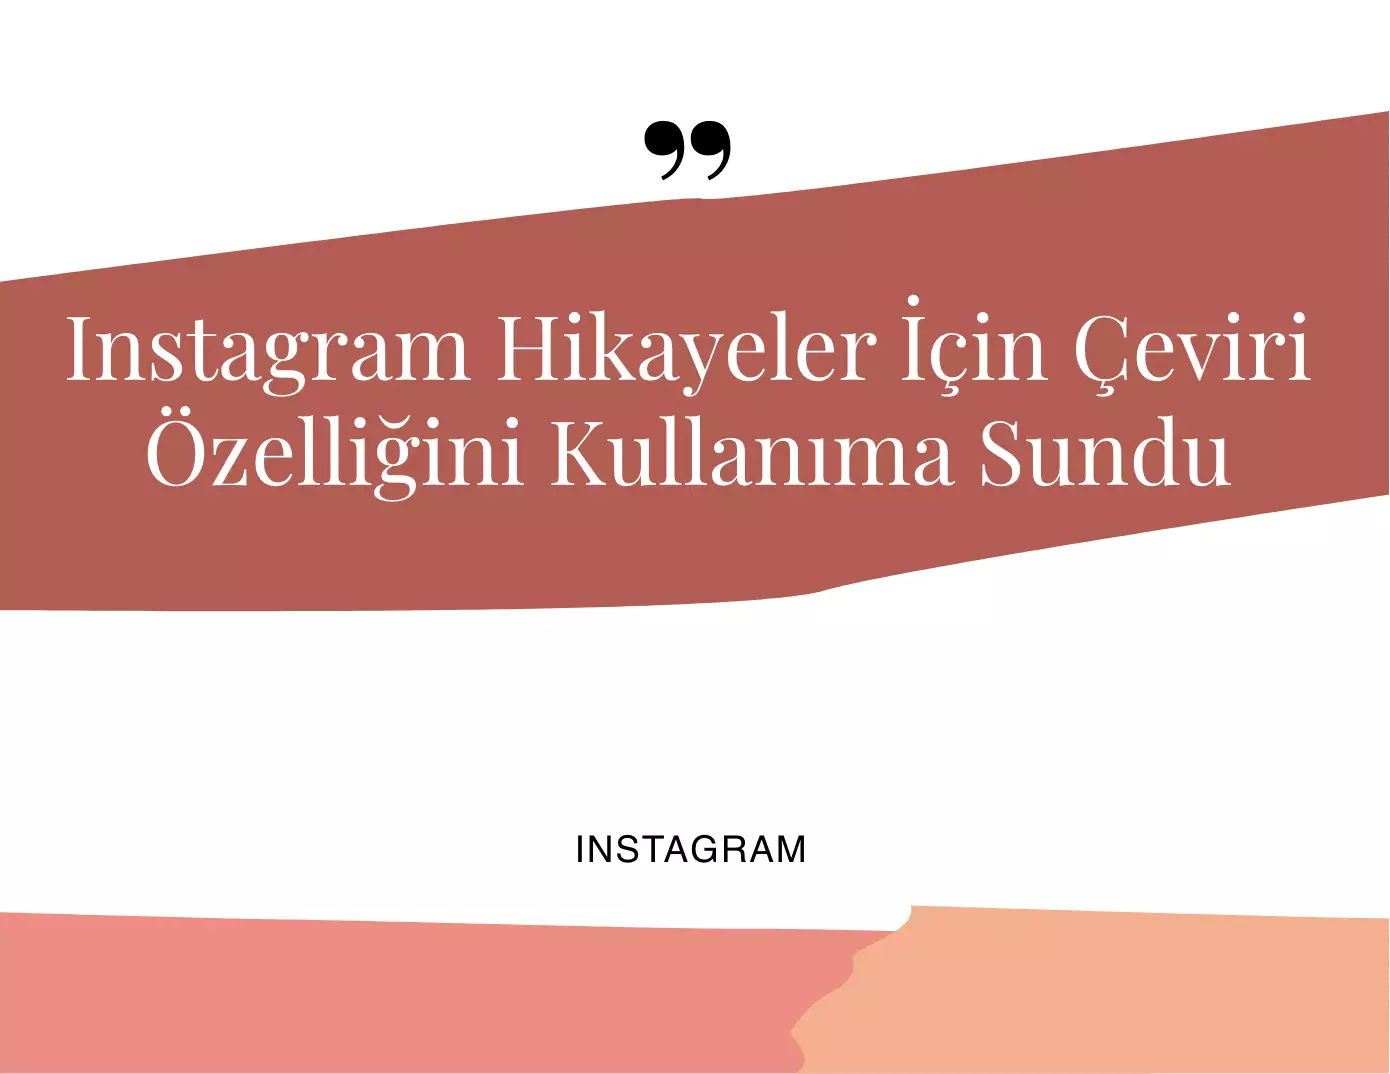 Instagram Hikaye Çeviri Özelliğini Kullanıma Sundu